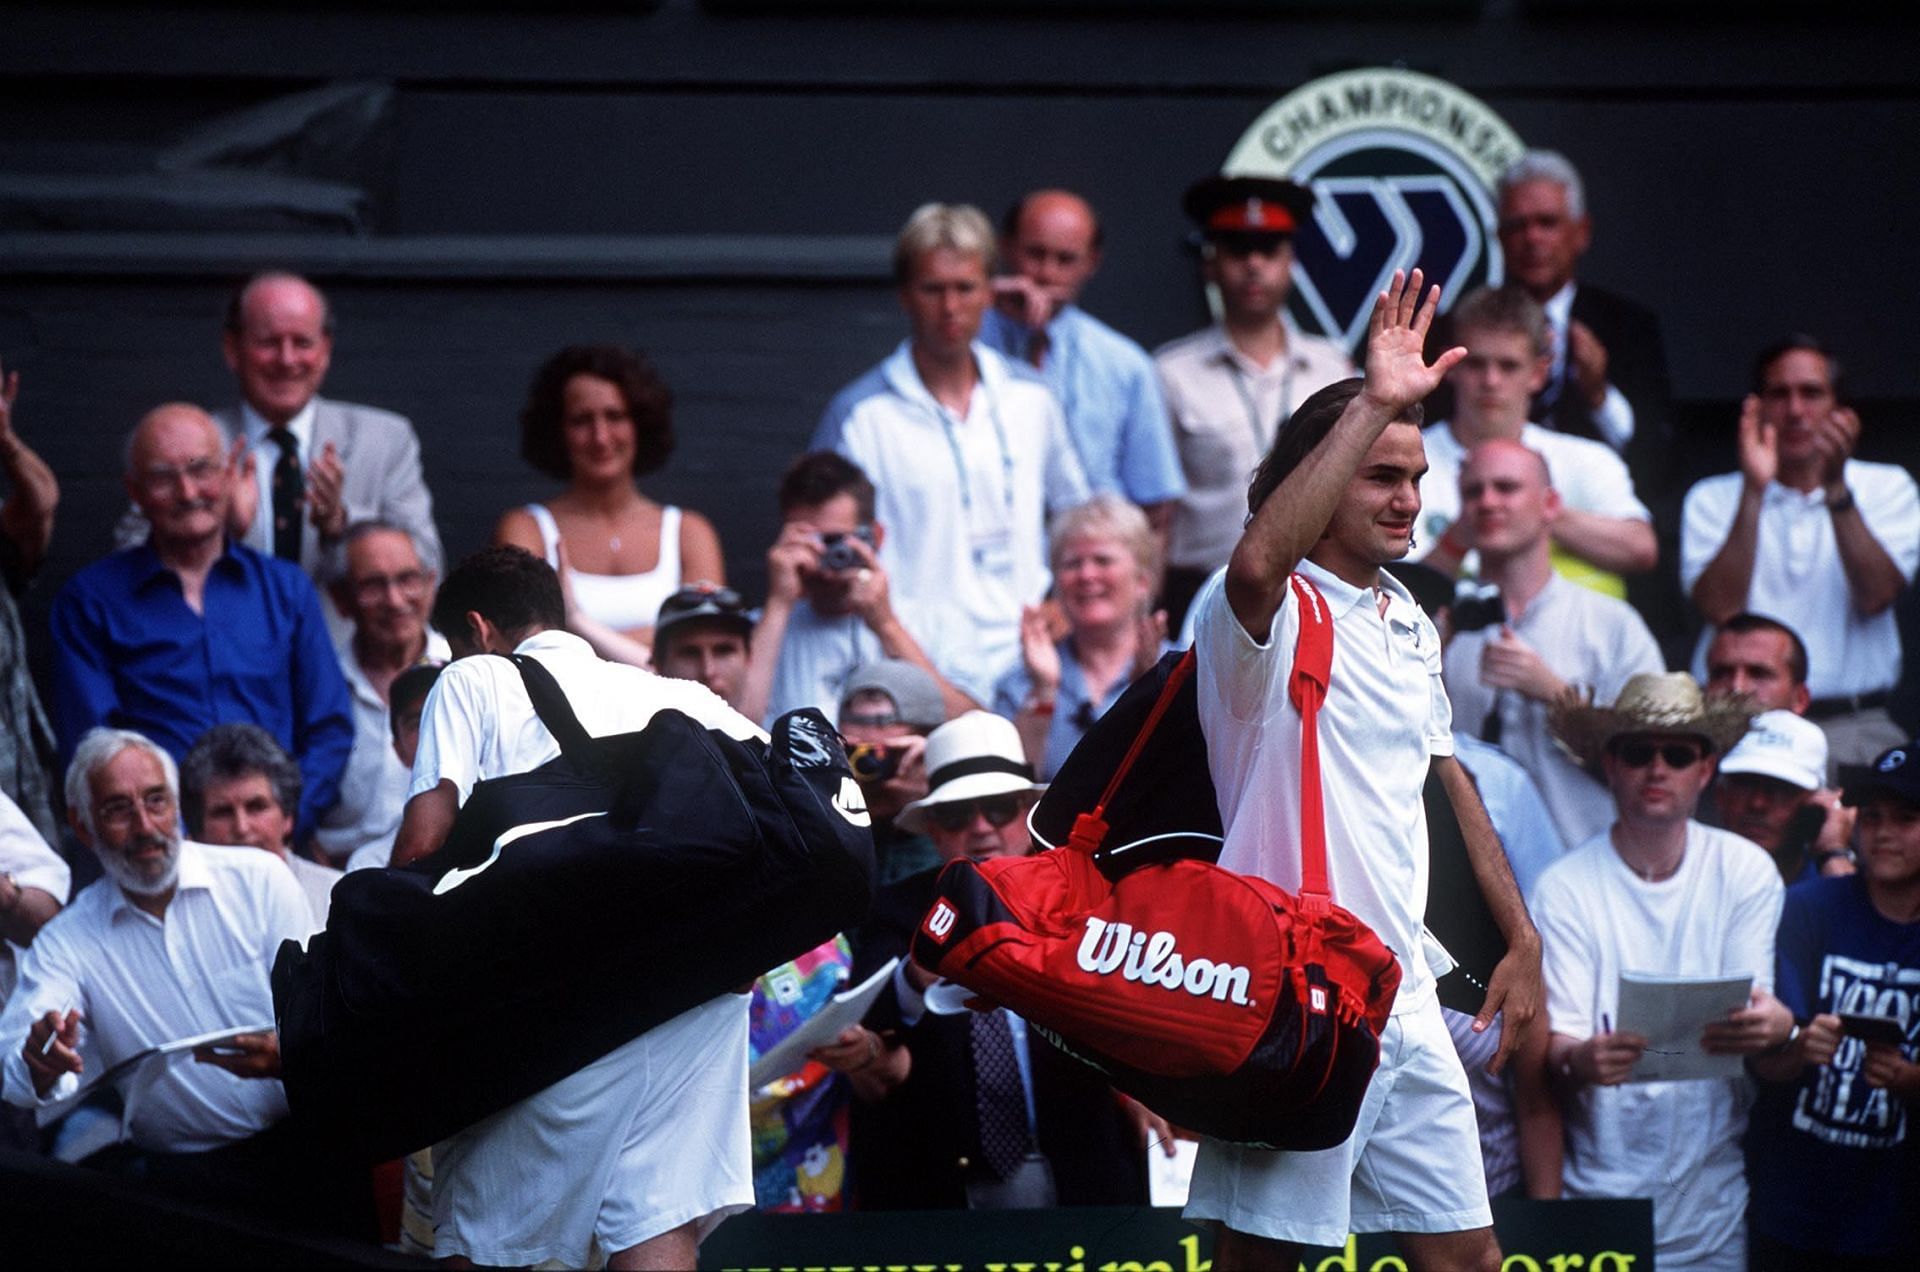 Roger Federer exults after beating Pete Sampras. (Pic- Getty Images)